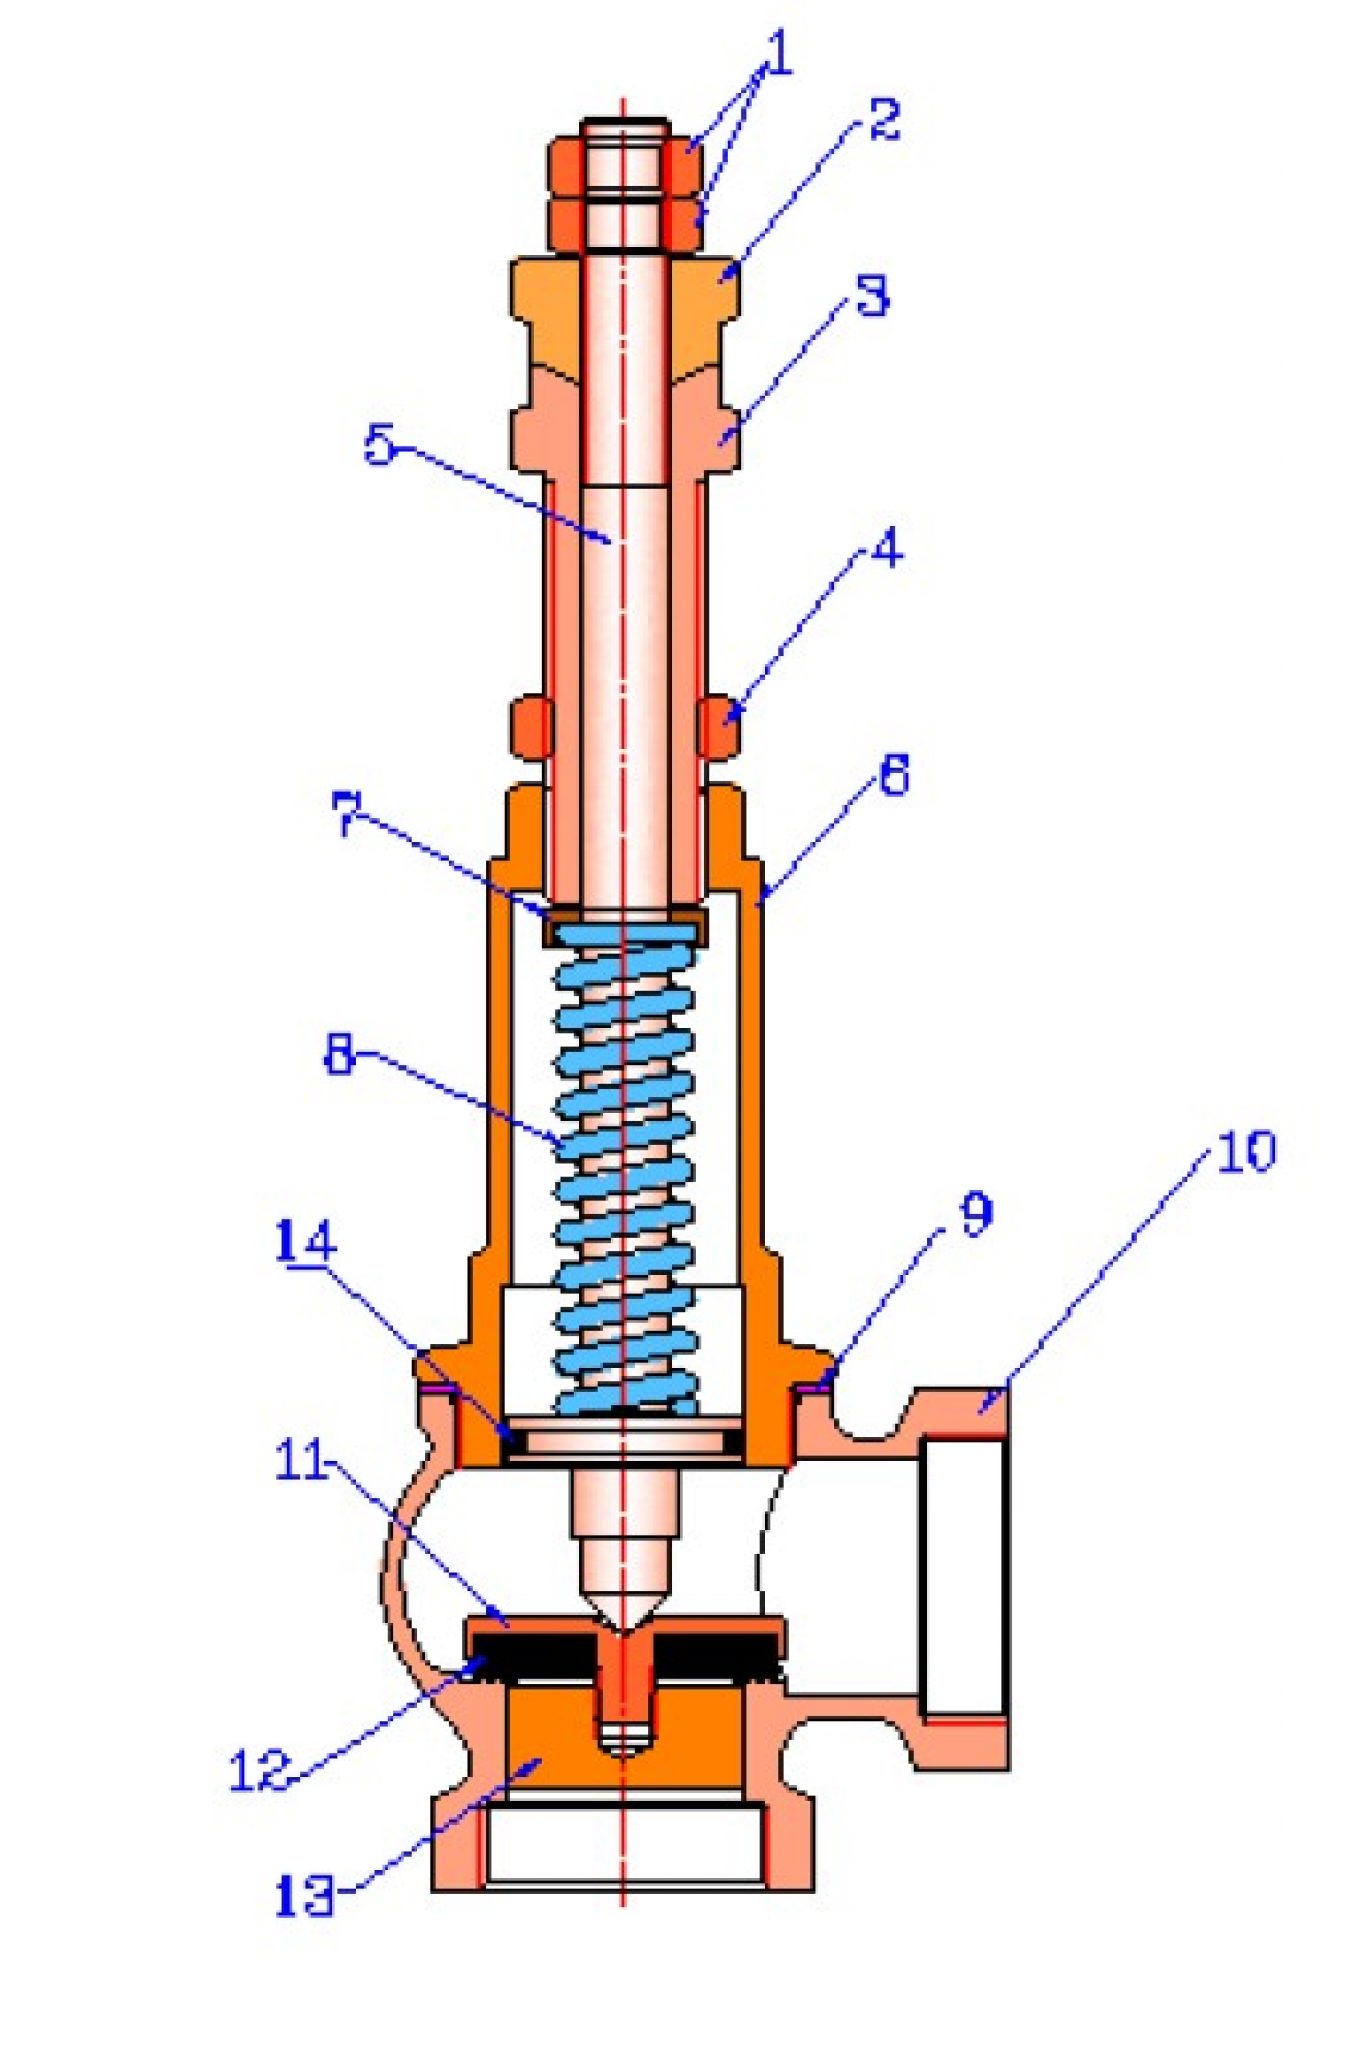 VT 1831 клапан предохранительный. Регулировка клапана vt1831.